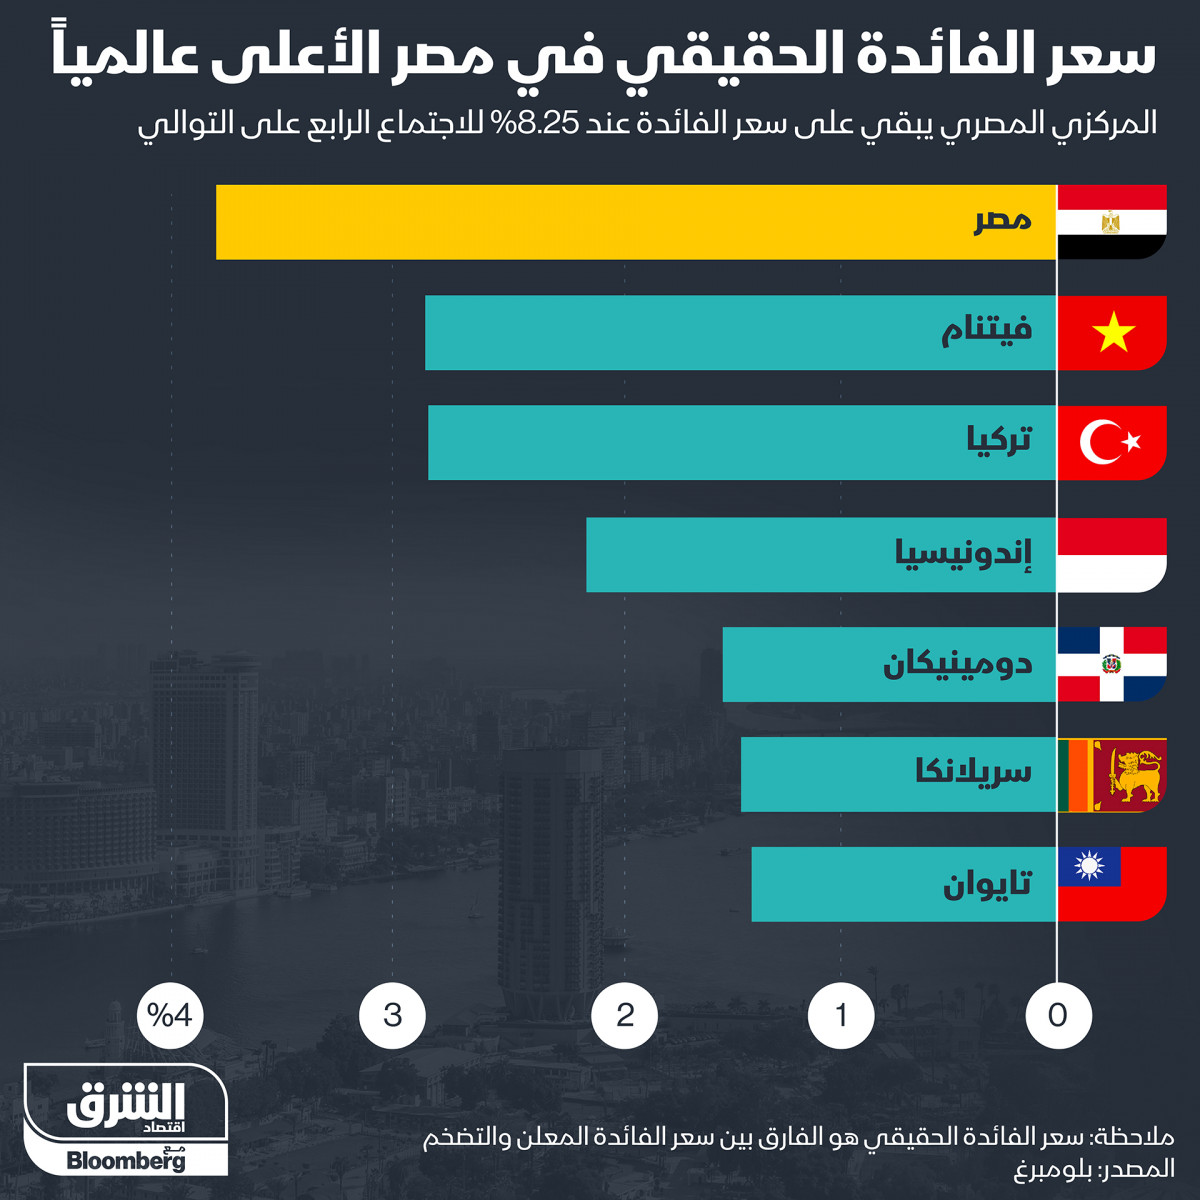 سعر الفائدة الحقيقي في مصر الأعلى عالمياً